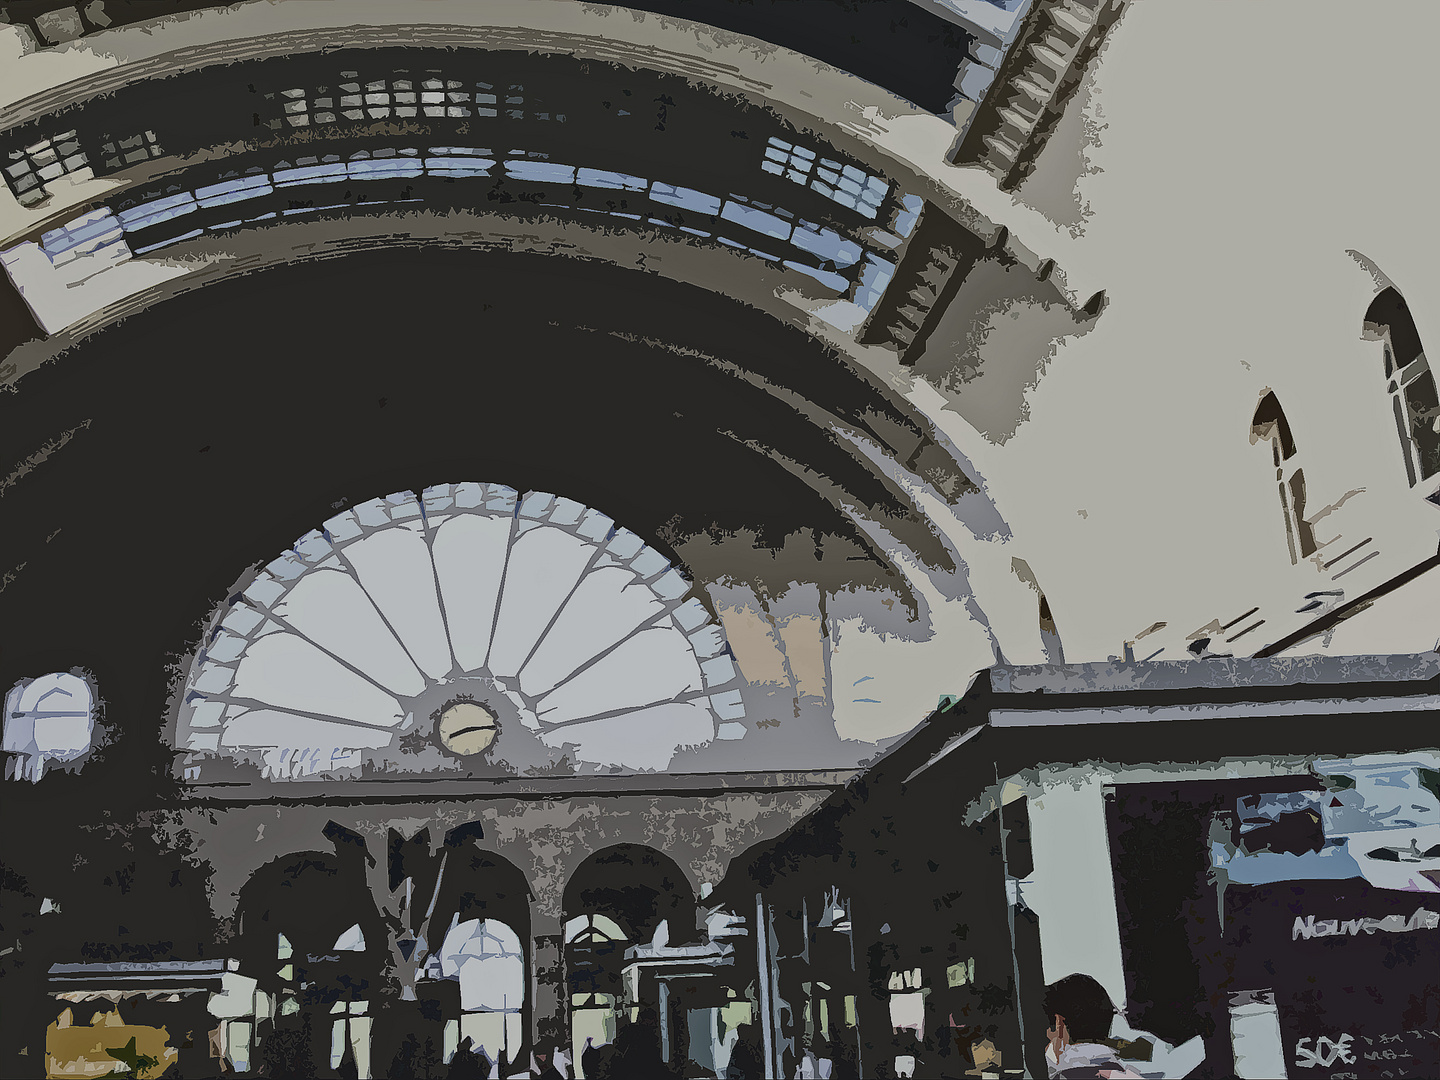 Paris-gare de l'est